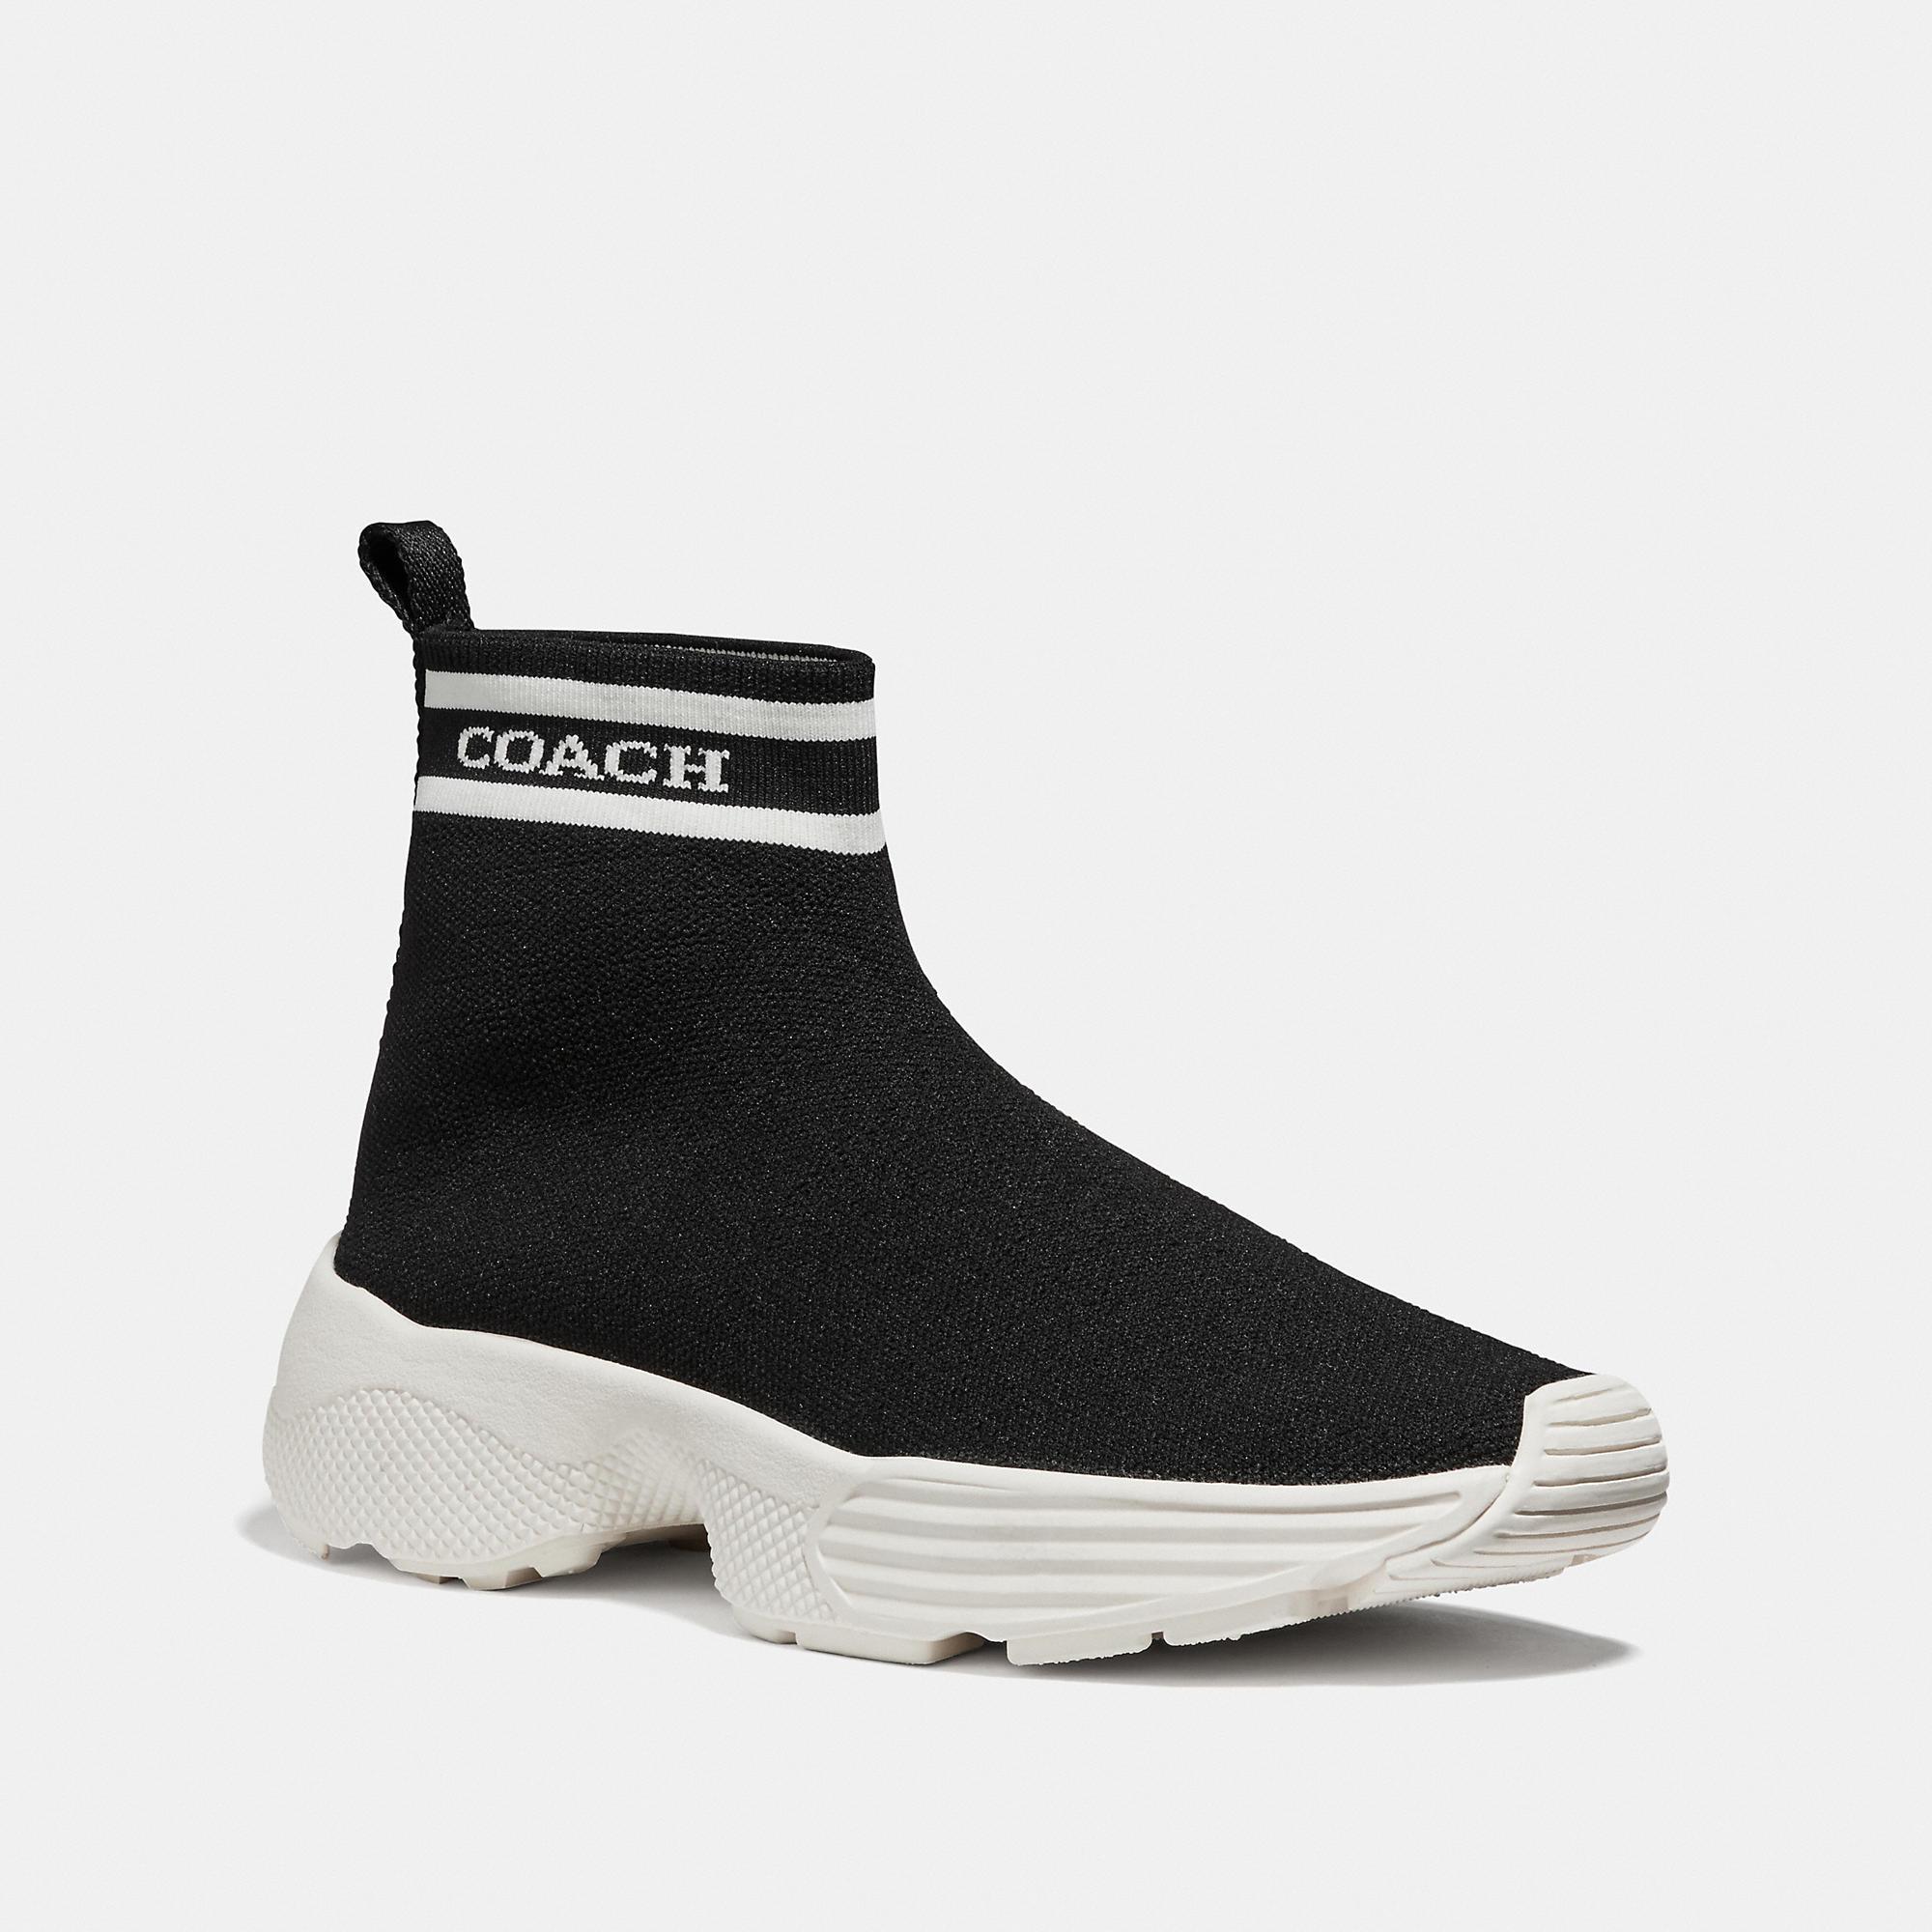 Reebok's Newest Sock Sneaker Looks Like It Should Cost a Thousand Bucks | GQ